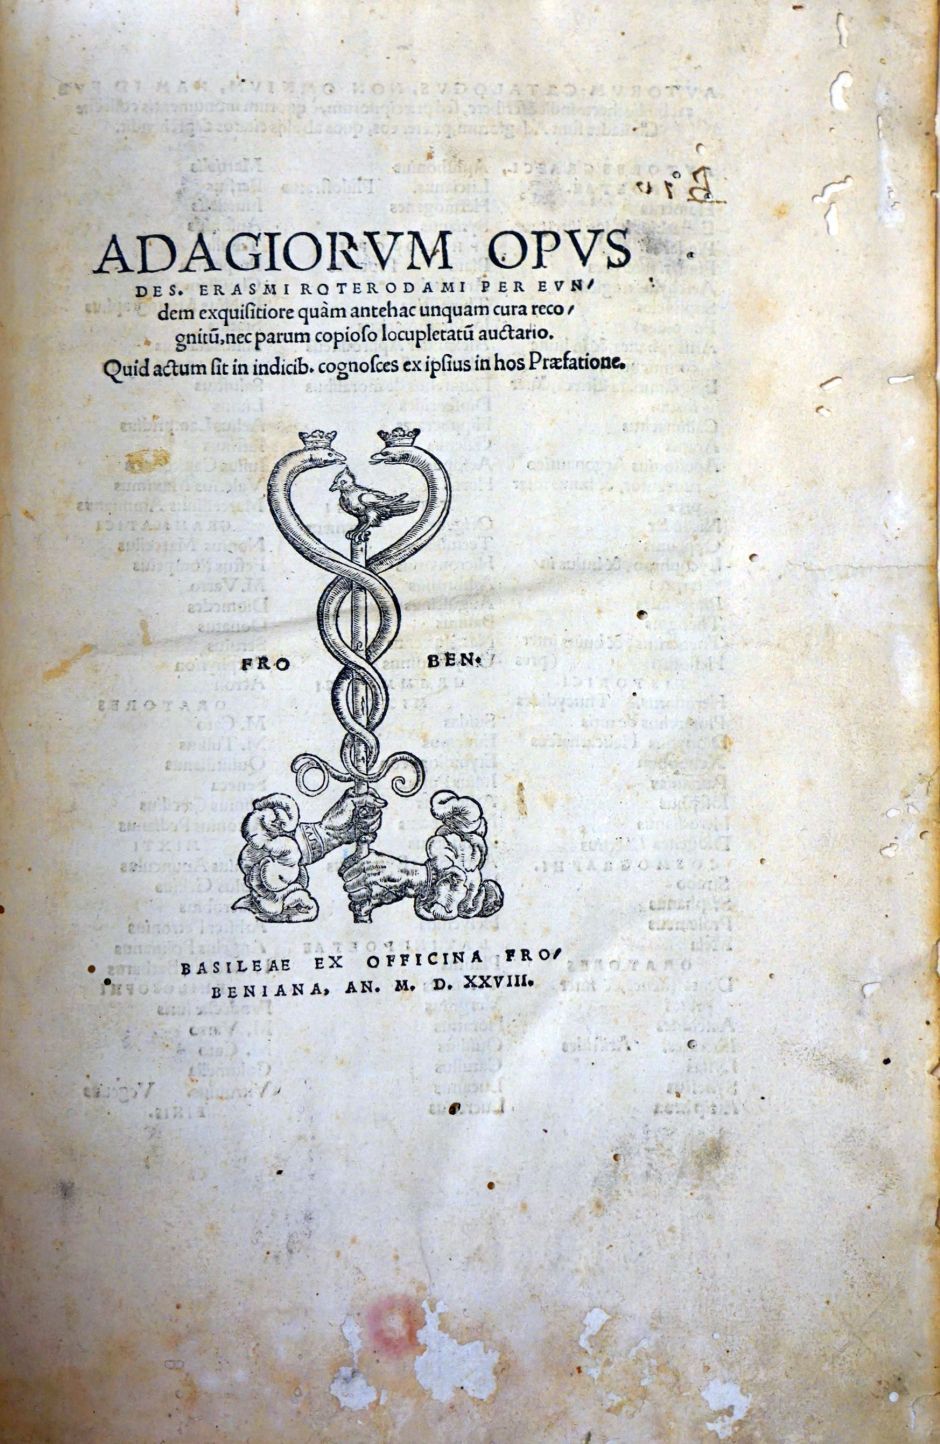 Lot 1102, Auction  115, Erasmus von Rotterdam, Desiderius, Adagiorum Opus